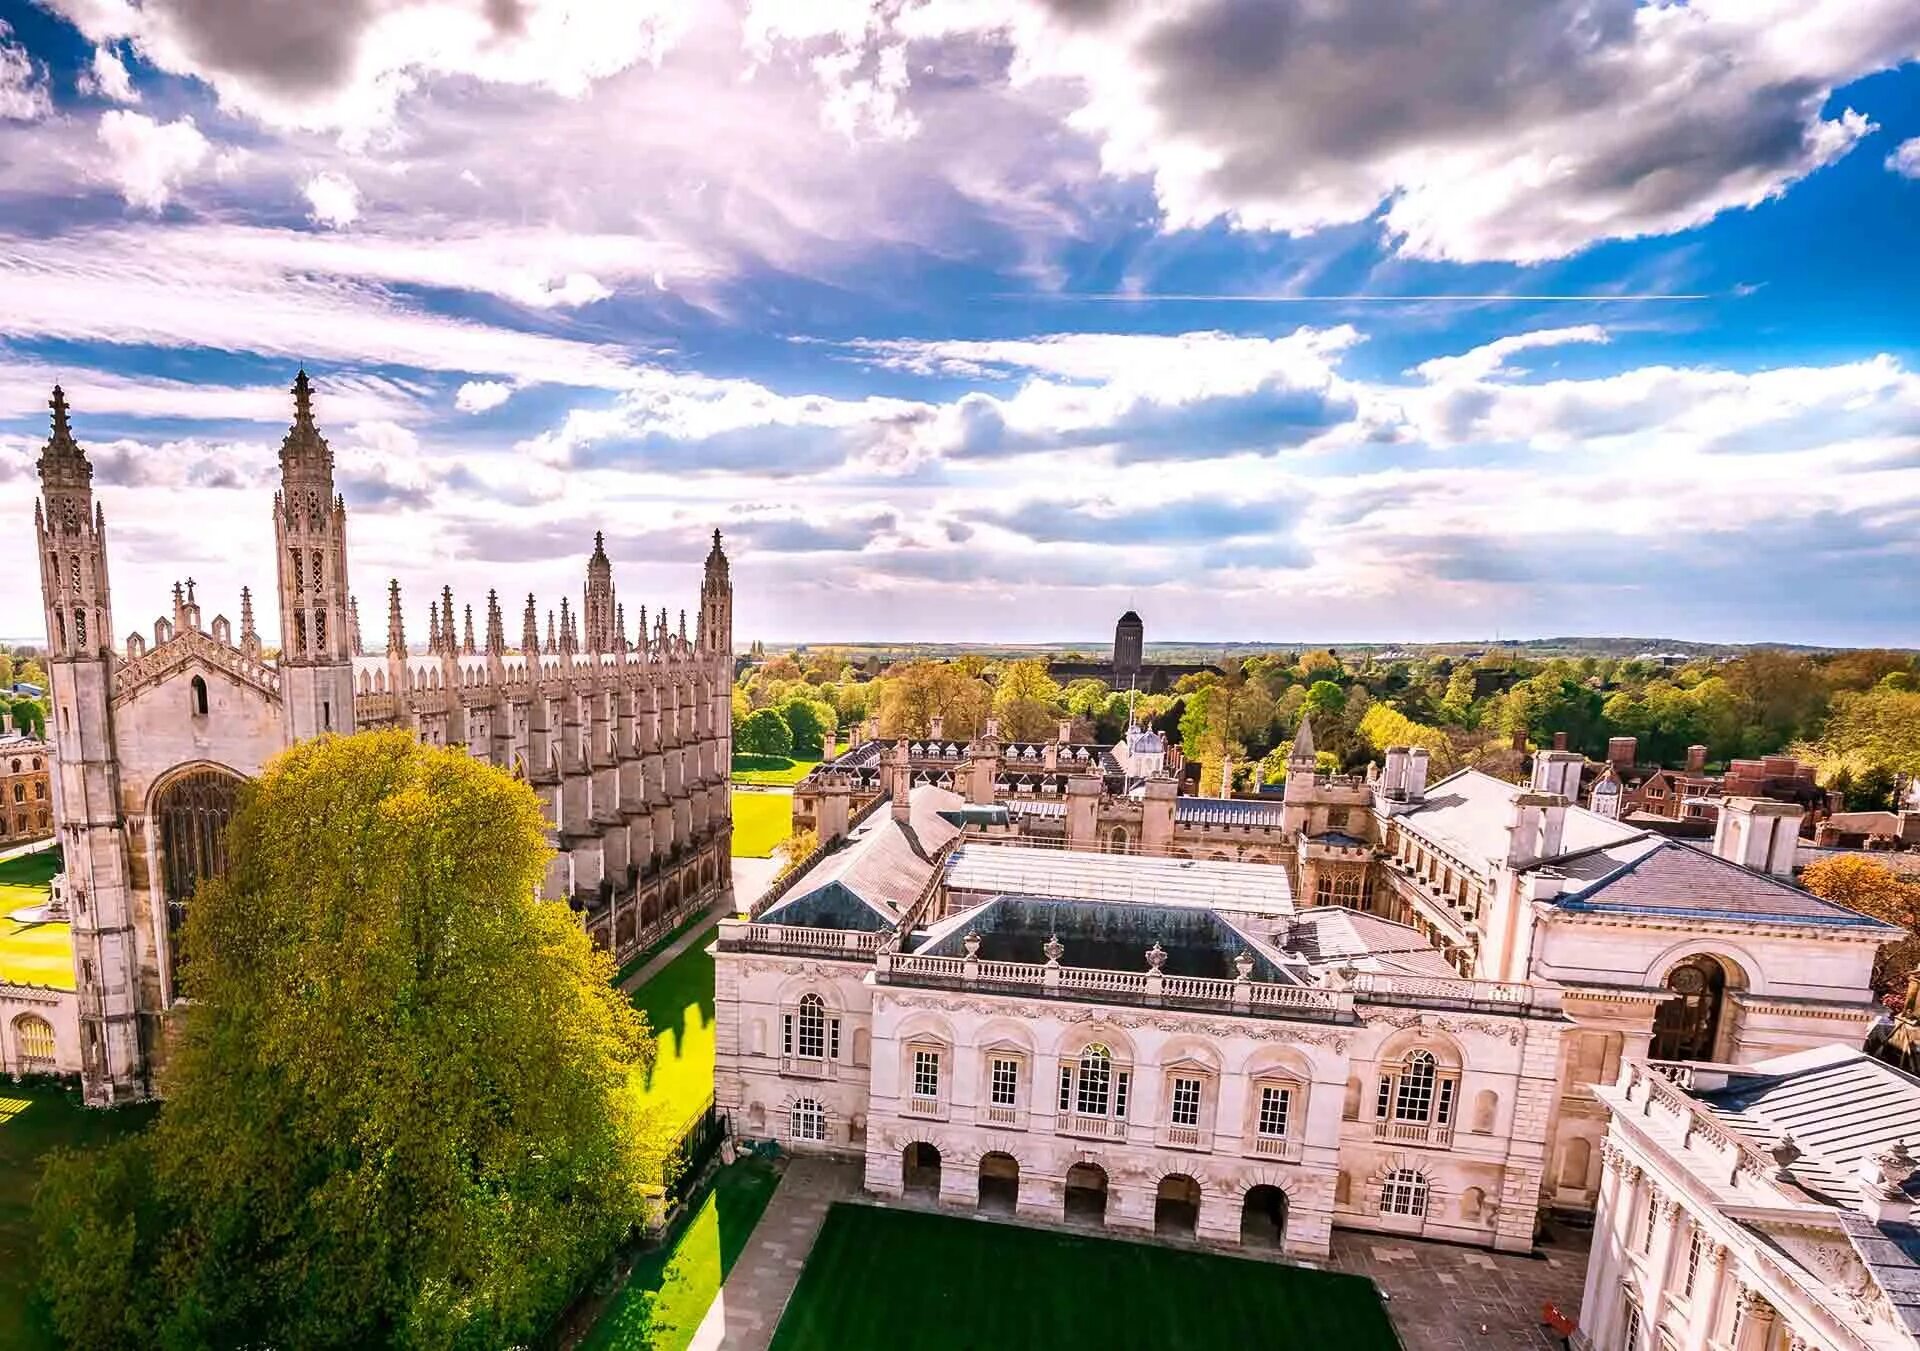 Кембриджский университет Кембридж. Кембридж университет 1209. Кембридж город в Великобритании. Университеты Англии Кембридж университет.